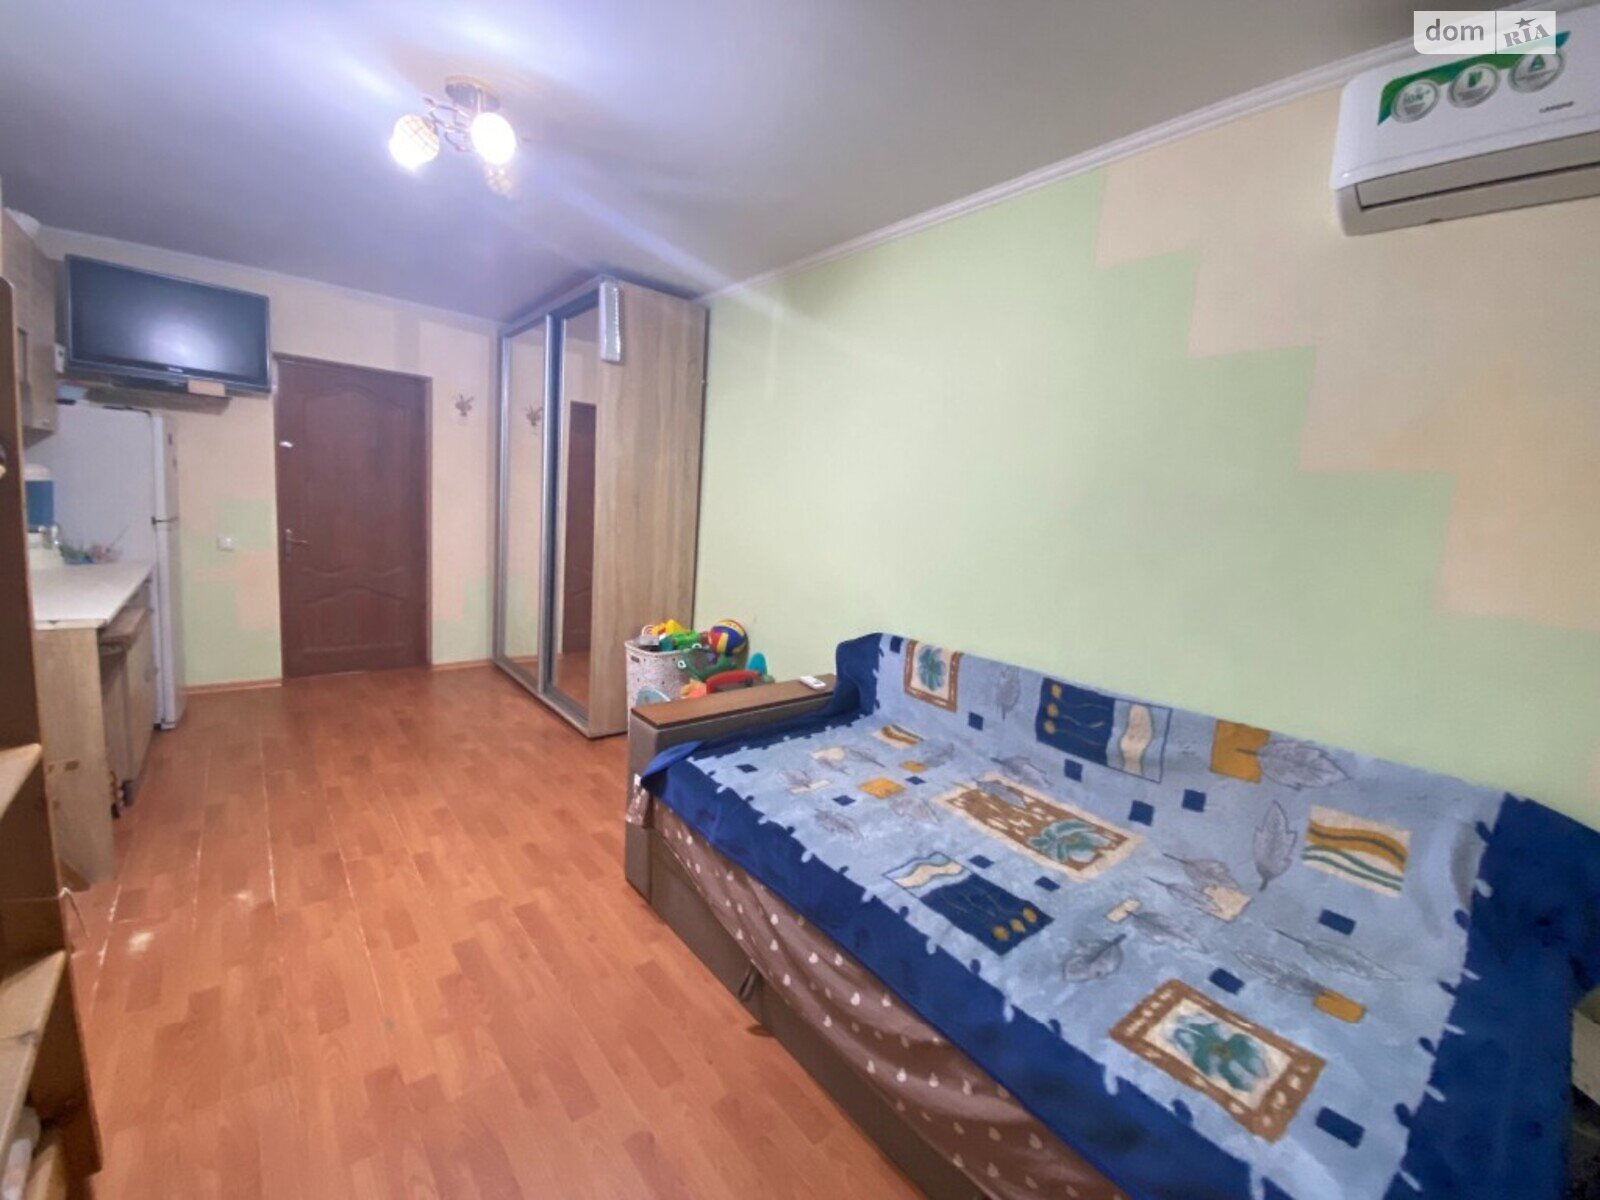 Кімната в Одесі на вул. Космонавтів 66 в районі Хаджибейський на продаж фото 1